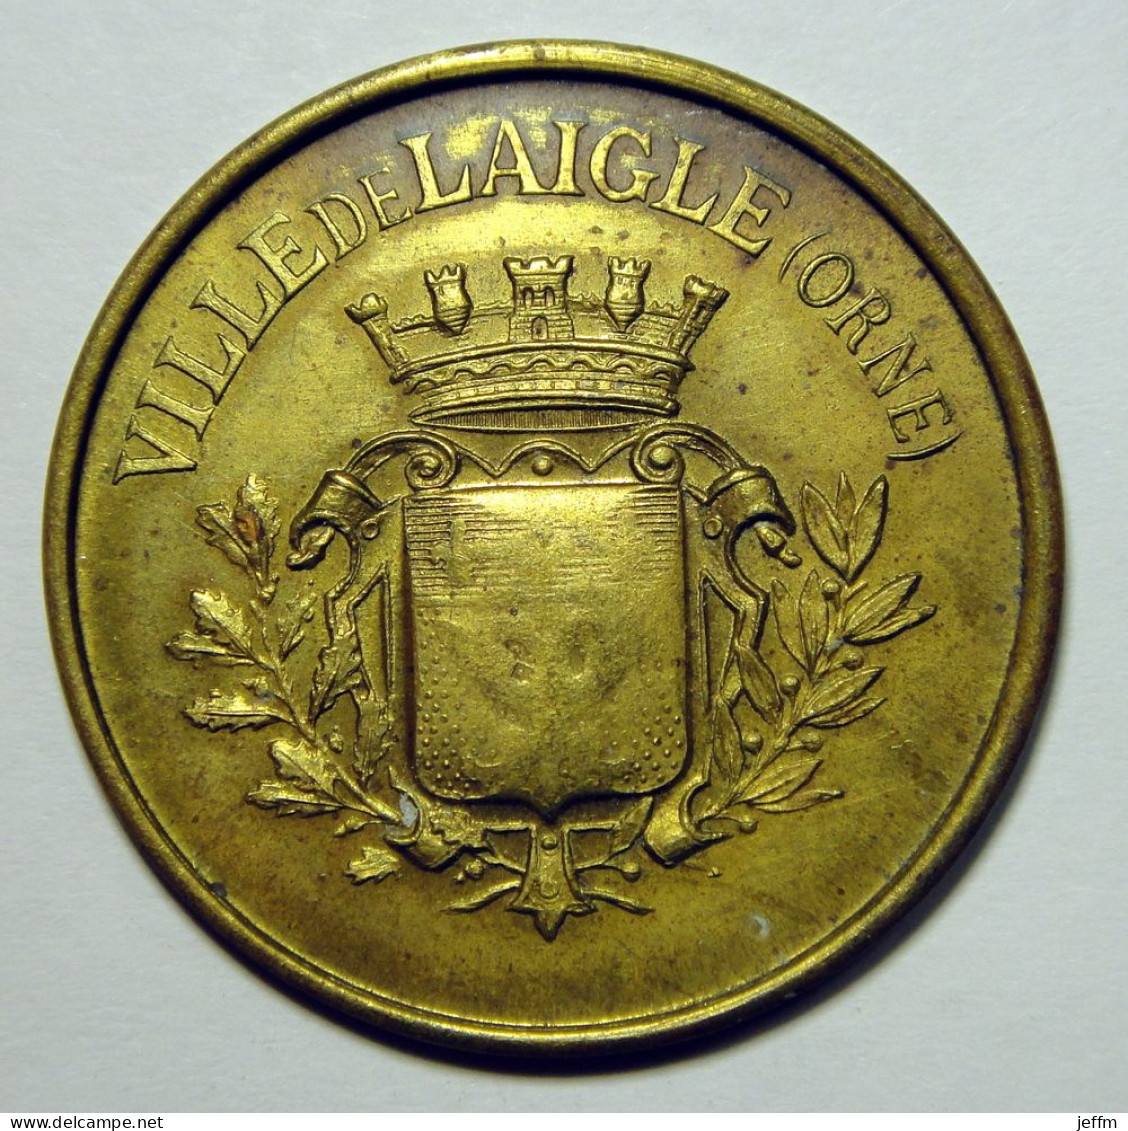 Ville De Laigle (Orne) - Bureau De Bienfaisance - BOIS - Monétaires / De Nécessité